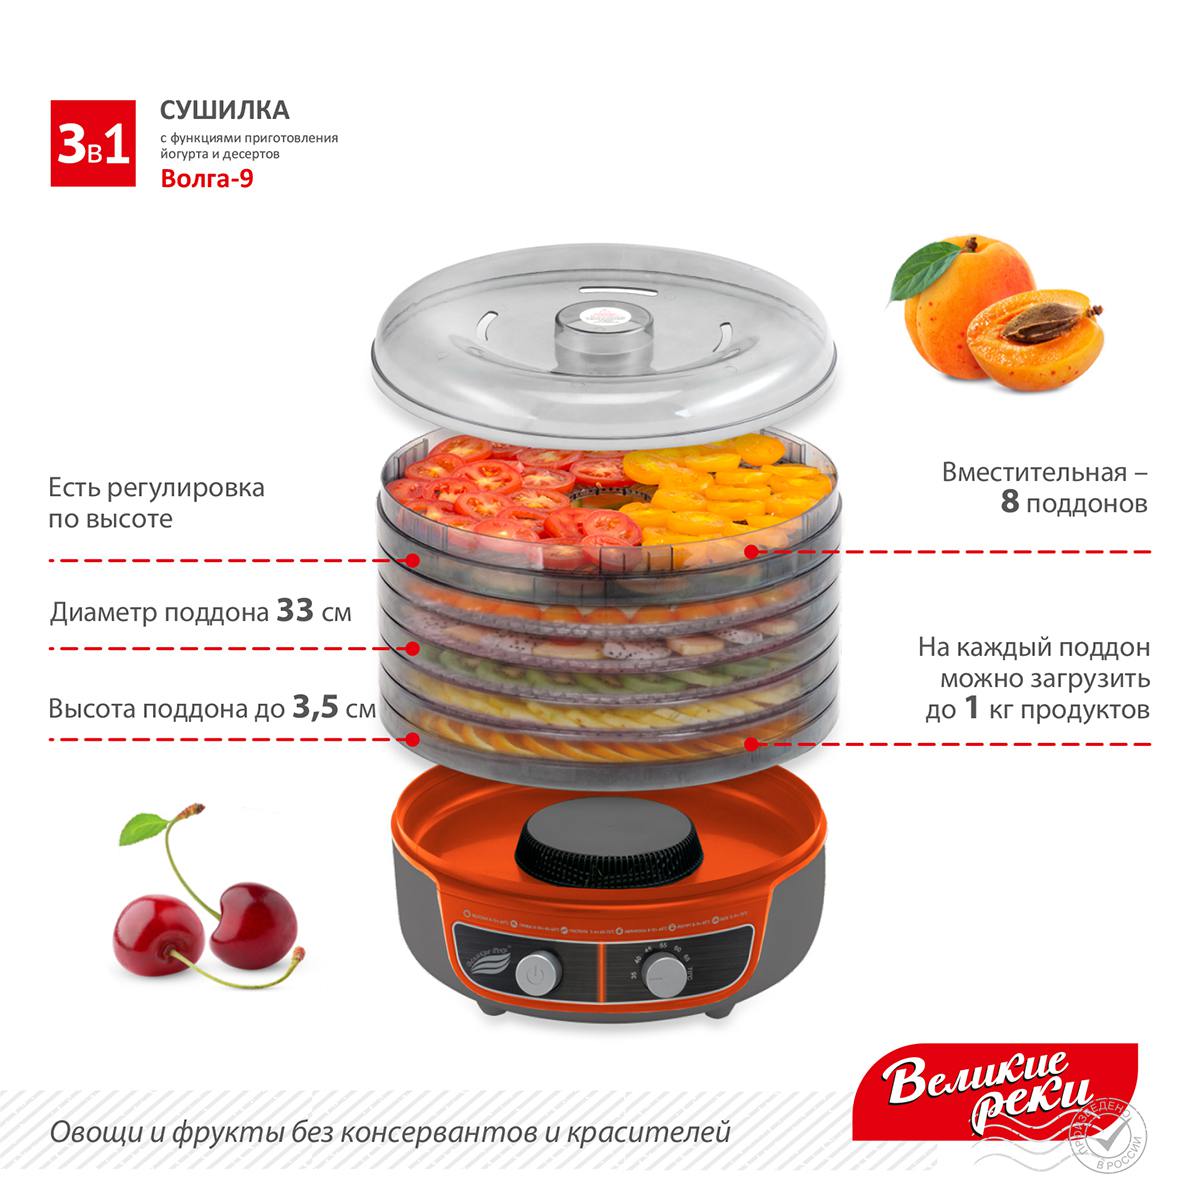 Сушилка для овощей 3в1 с функциями приготовления йогурта и десертов + поддон для пастилы в подарок Великие Реки Волга-9 серо-оранжевая